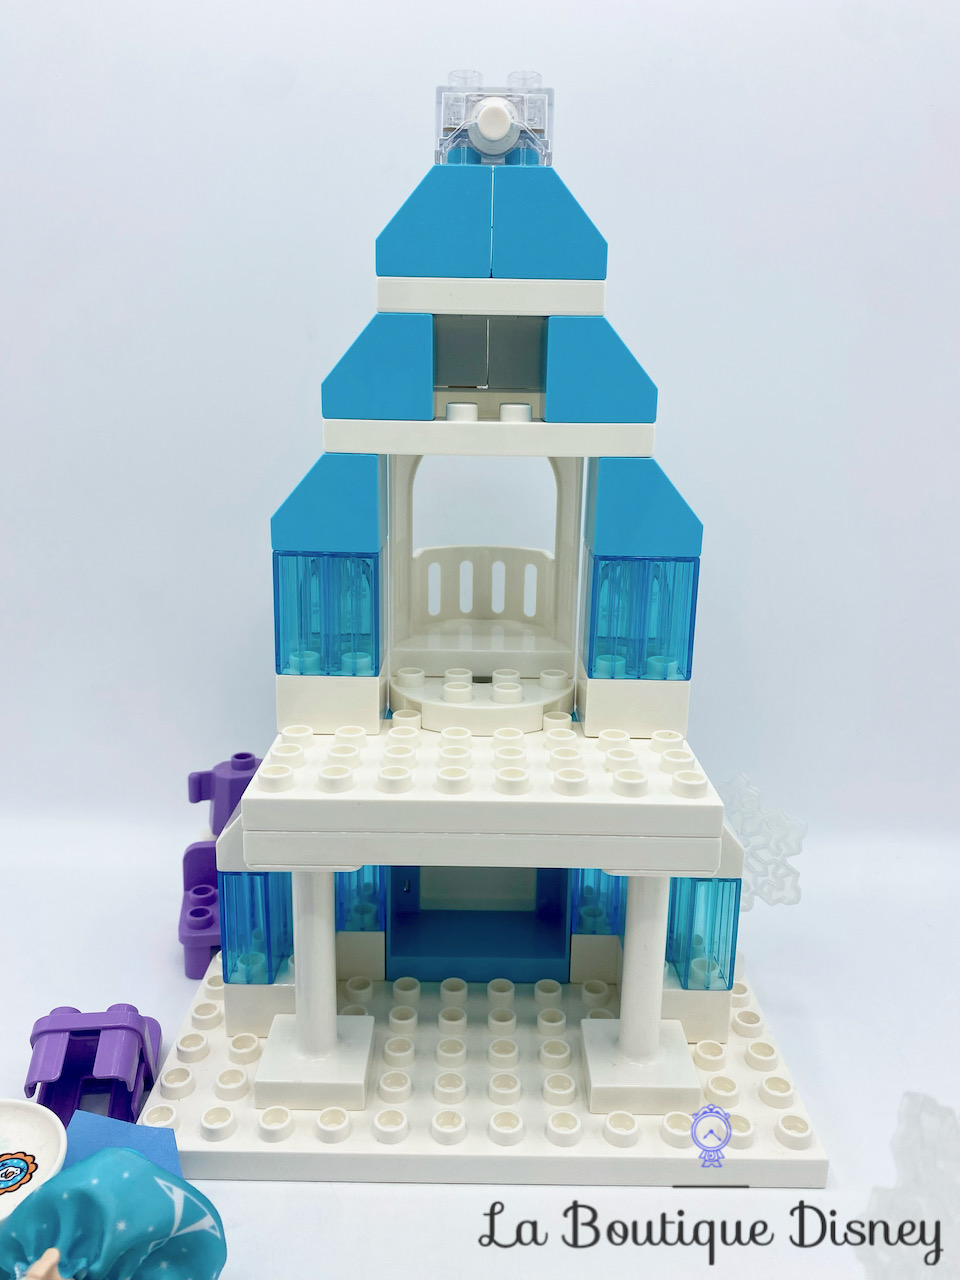 LEGO® DUPLO® Disney 10899 Le château de la Reine des neiges - Lego - Achat  & prix